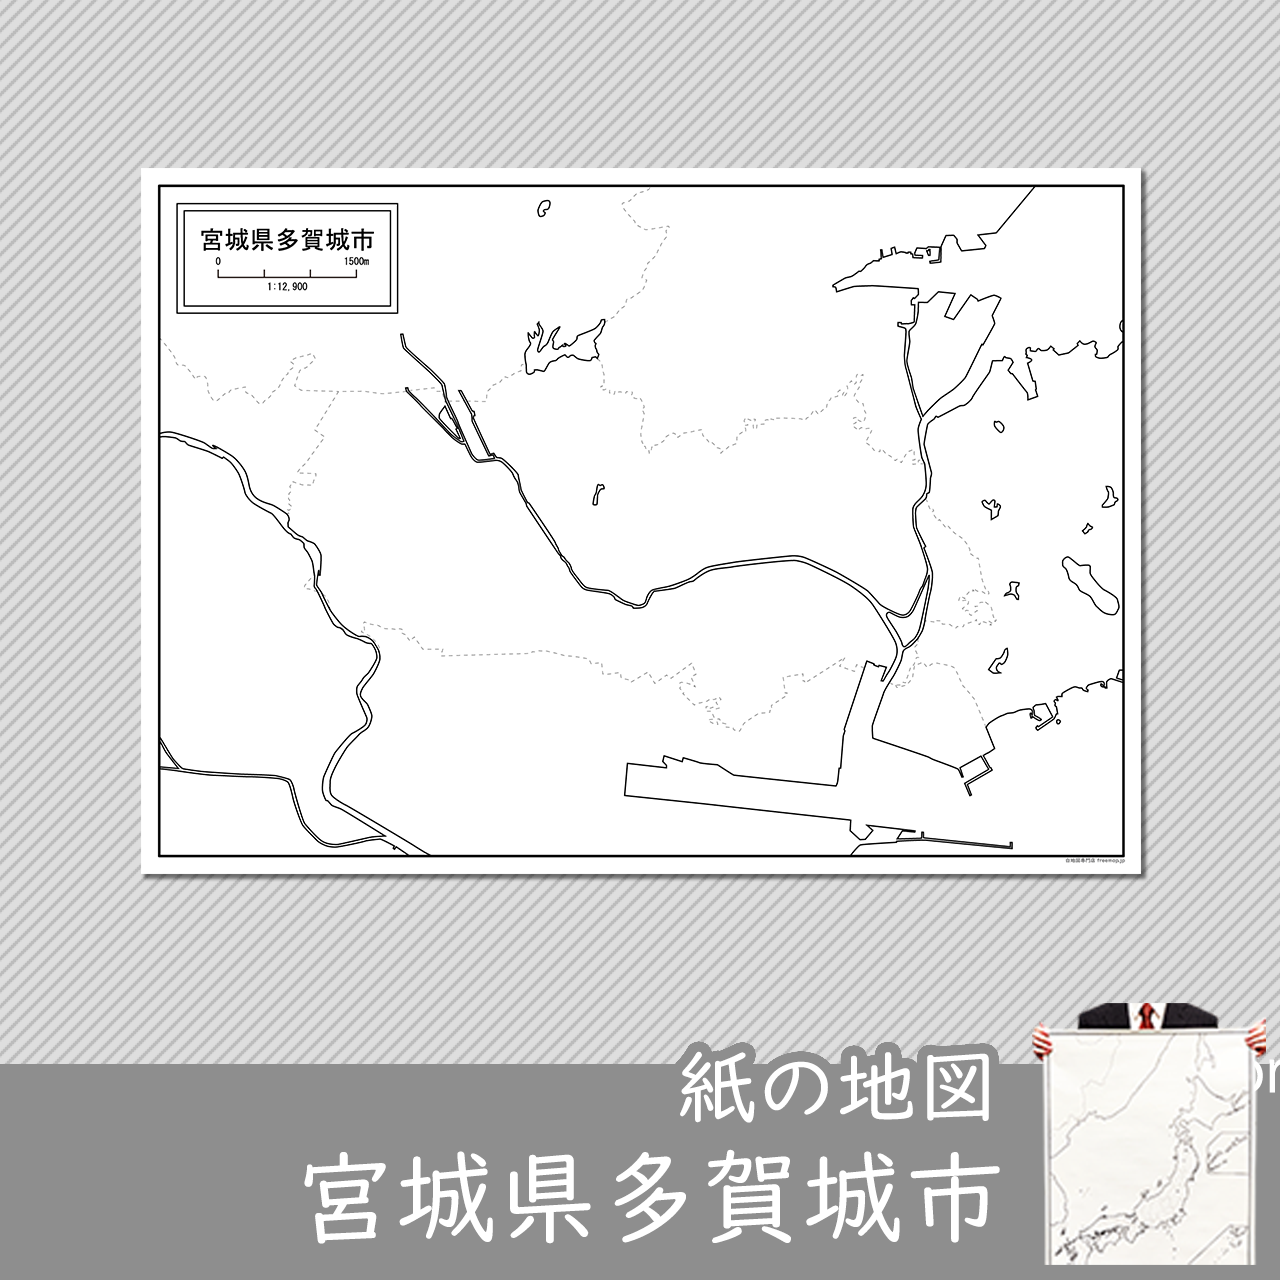 多賀城市の紙の白地図のサムネイル